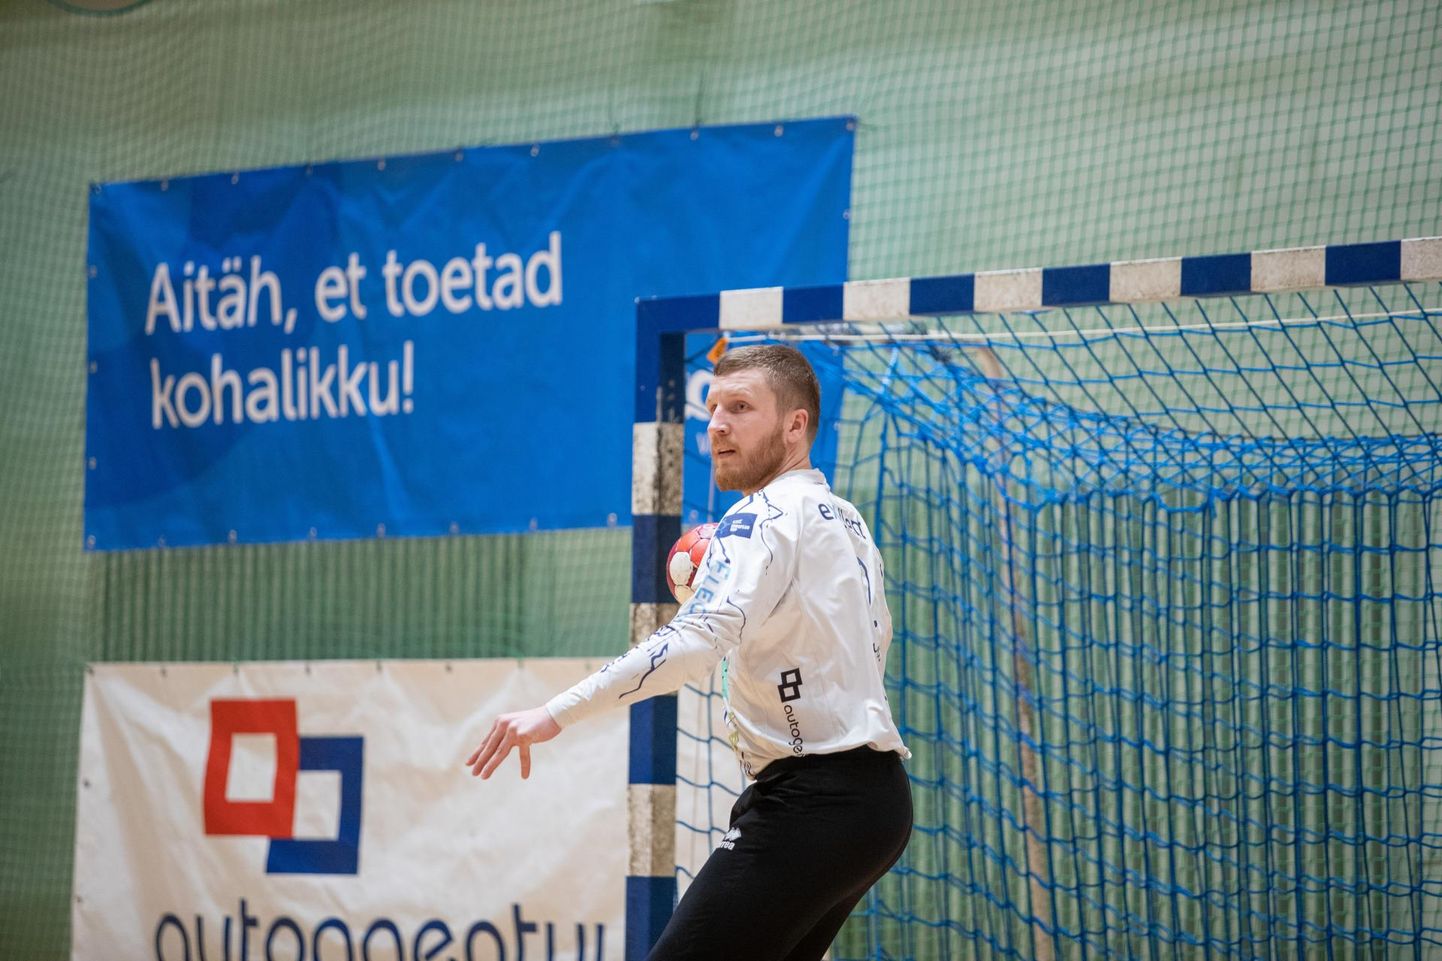 Homme õhtul mängib Viljandi HC kodusaalis Eesti meistrivõistluste kolmanda poolfinaalseeria kohtumise Mistra vastu. Fotol on Viljandi HC väravavaht Rasmus Ots.